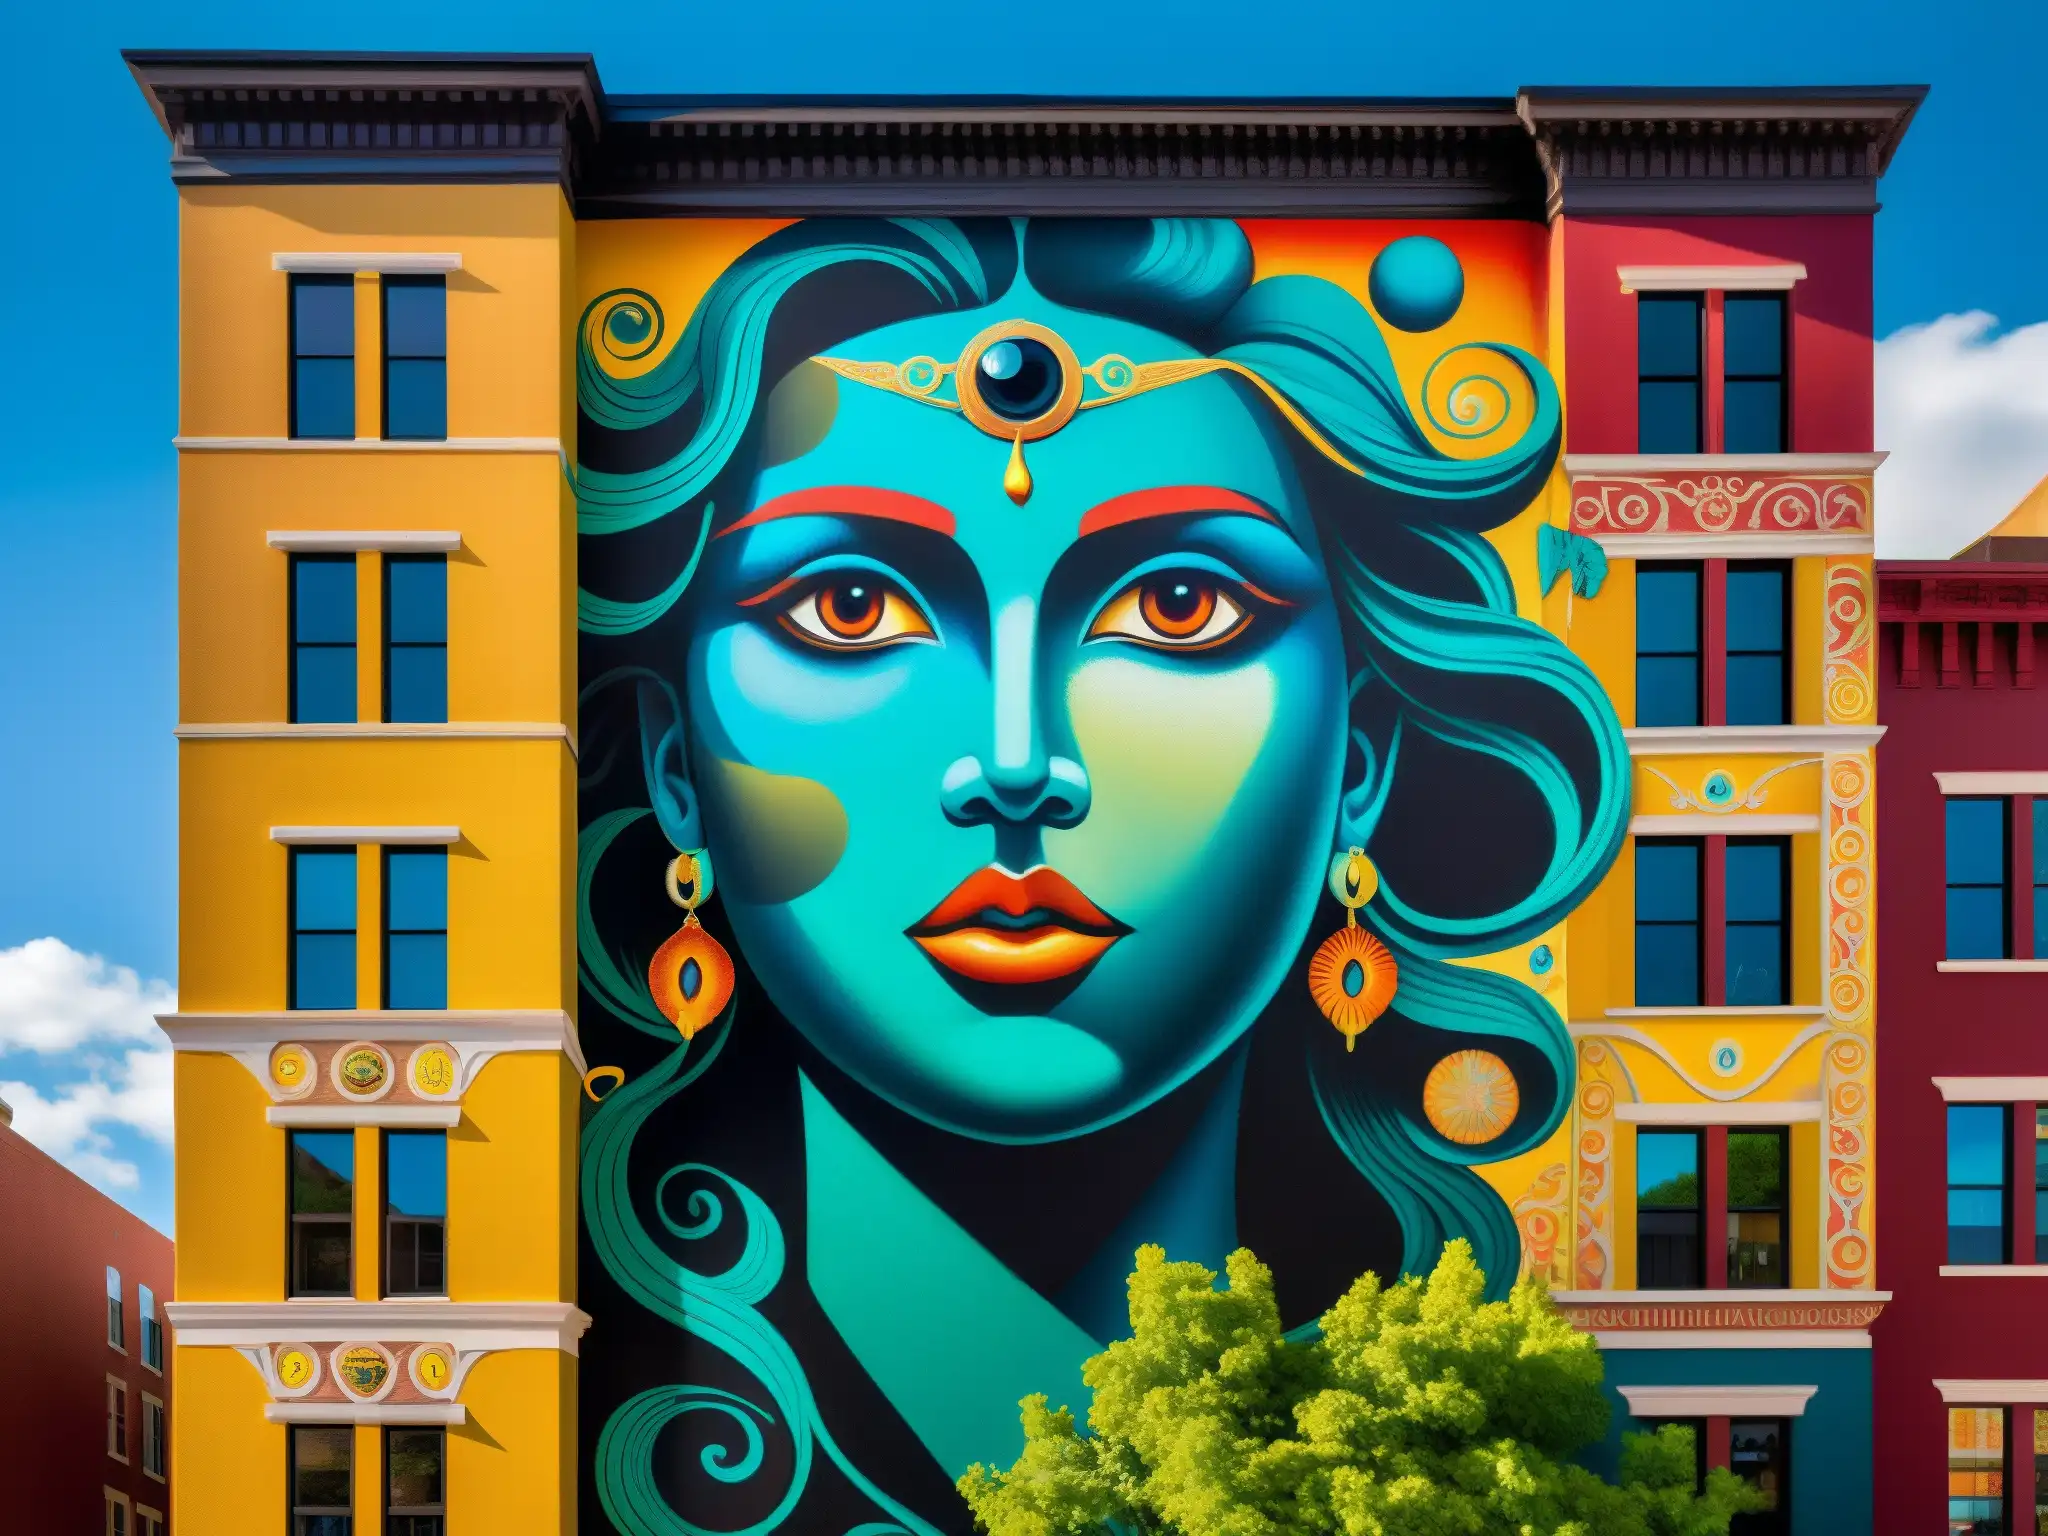 Un mural urbano con leyendas y mitos entrelazados, en colores vibrantes